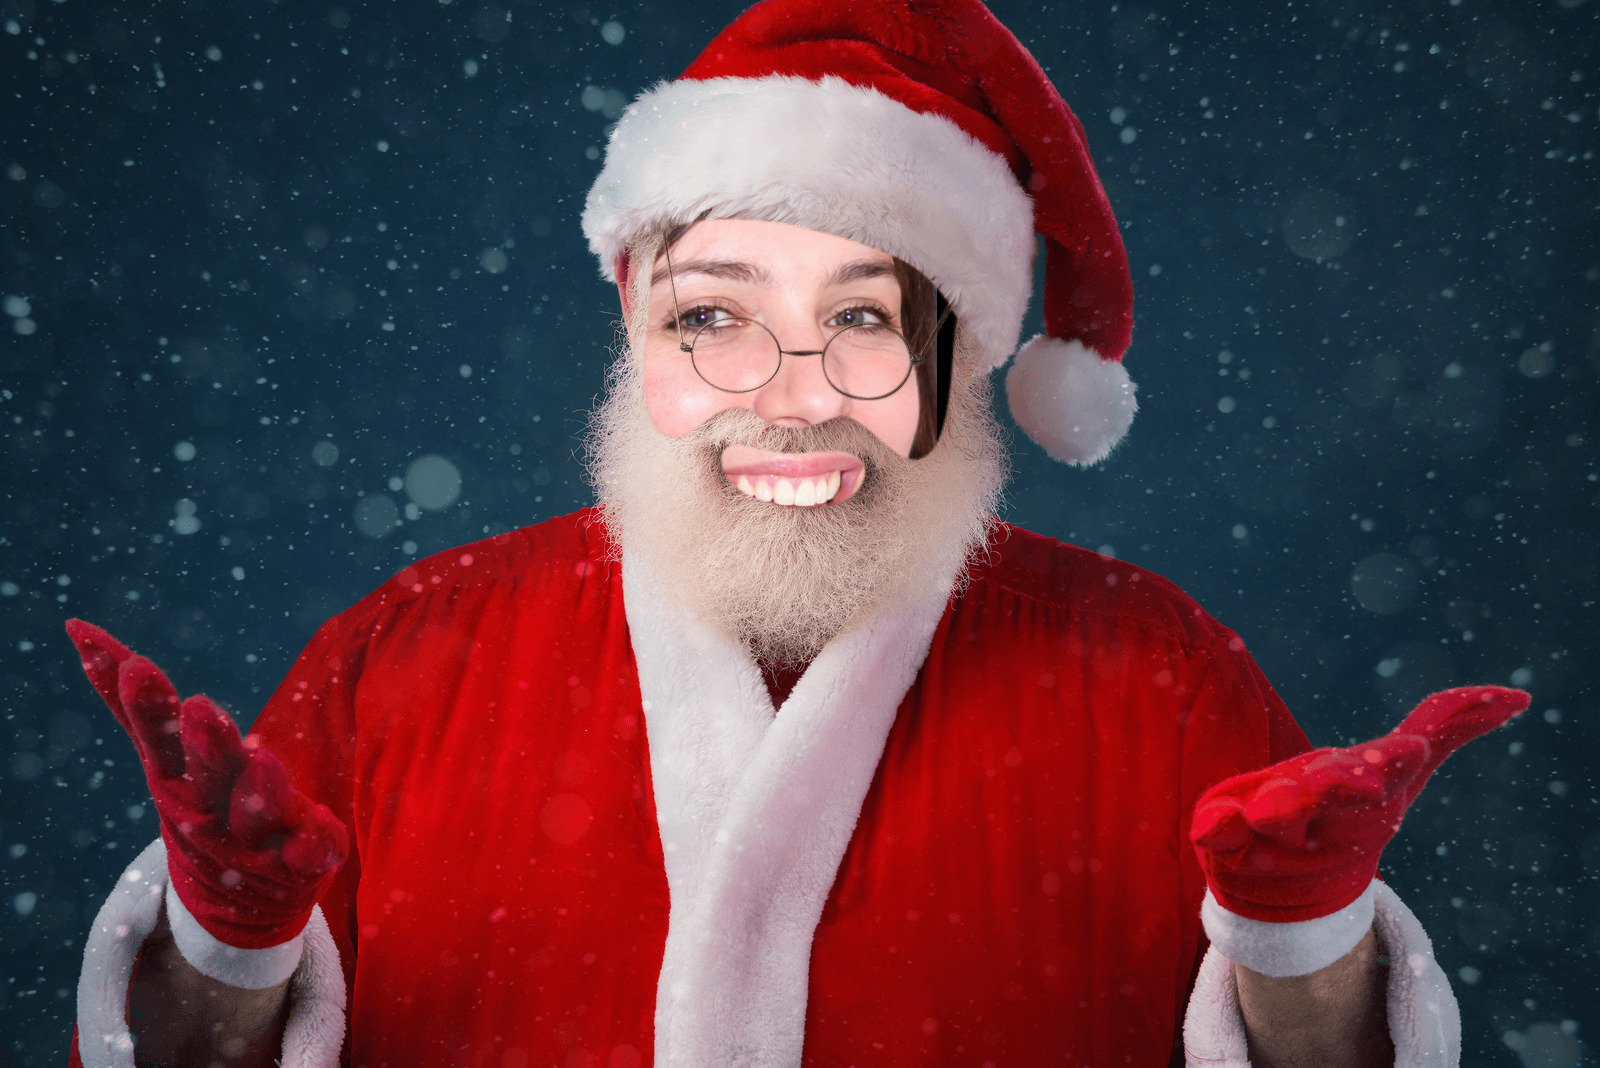 Echoe Matthews as Santa Claus